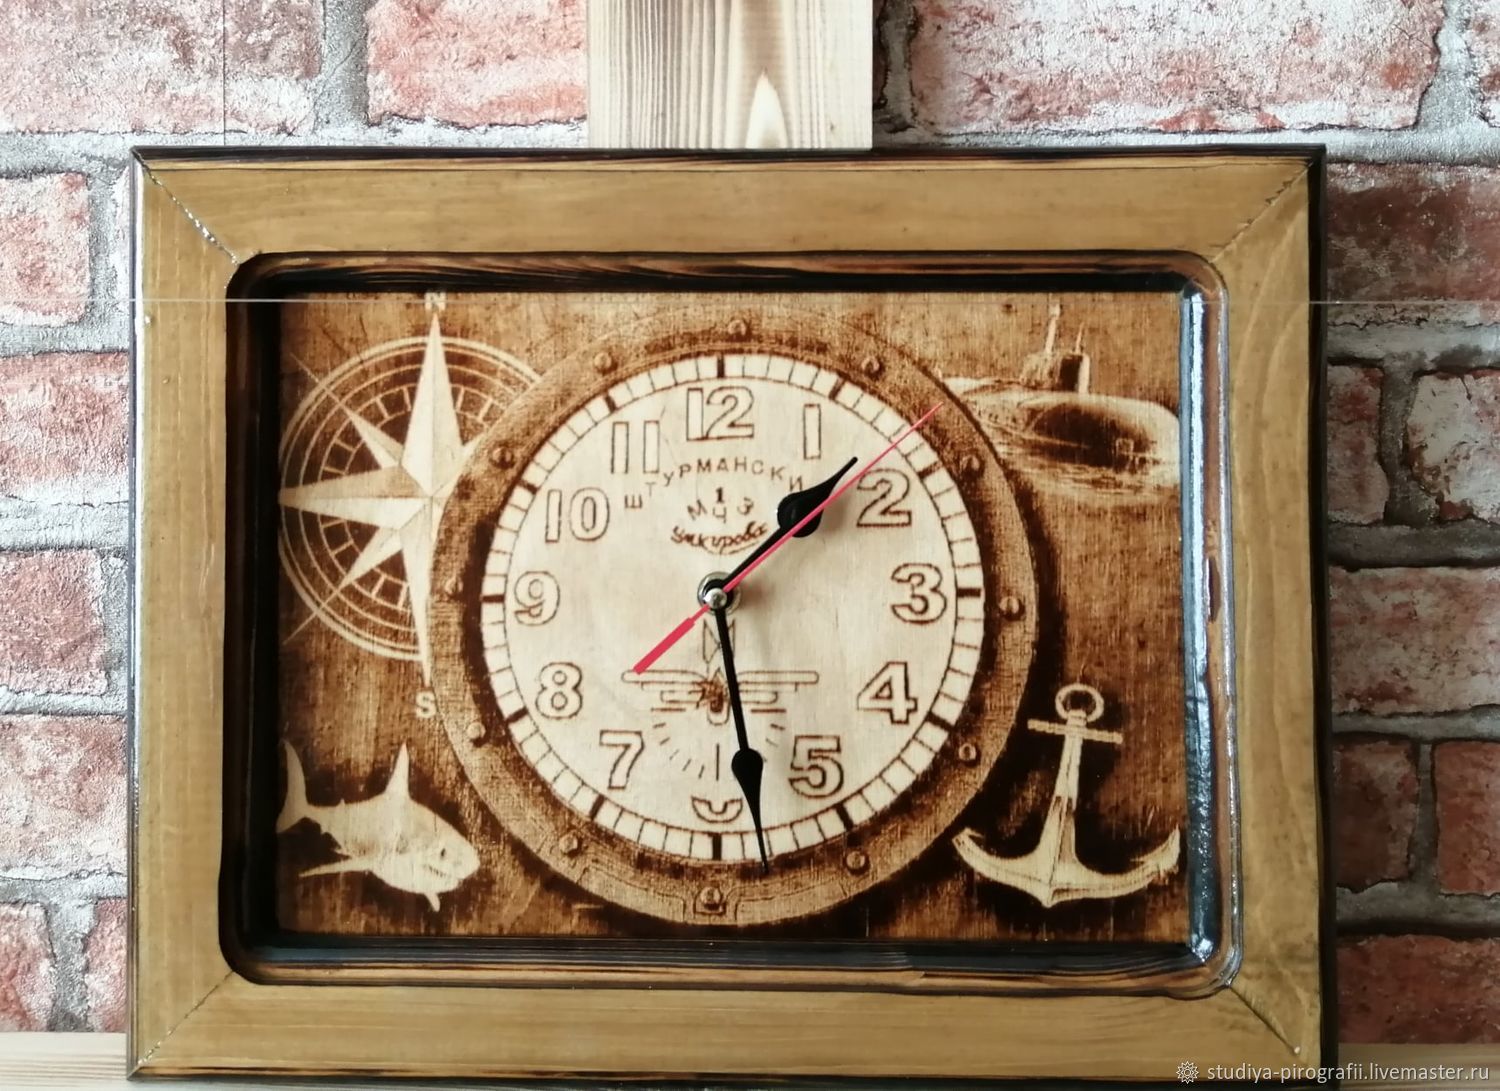 Морские часы настенные. Часы в морском стиле настенные. Часы настенные "морские". Часы морская тематика. Часы настенные морская тематика.